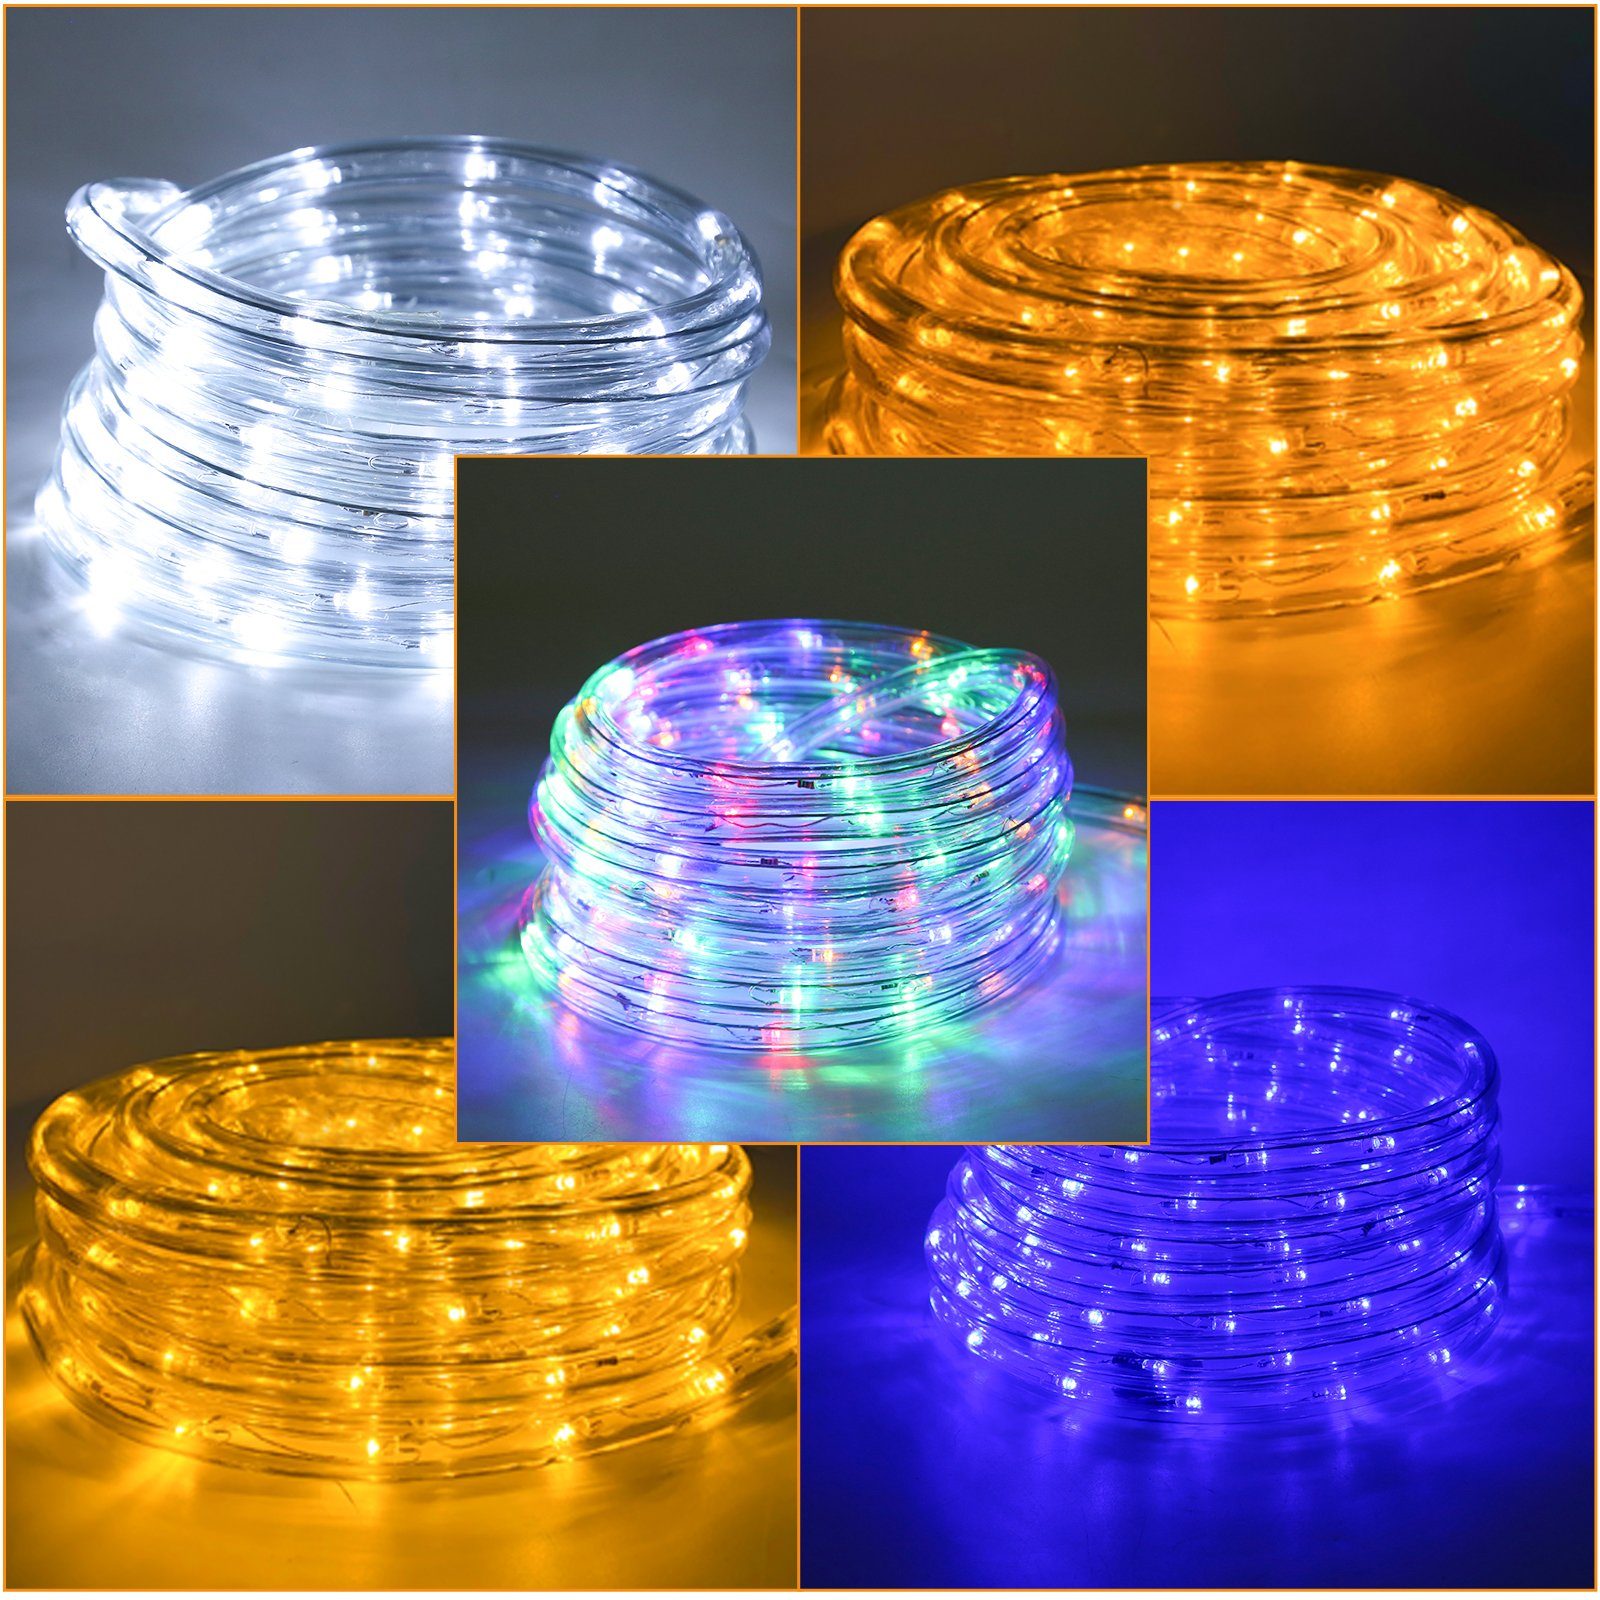 Clanmacy LED-Lichterkette LED Lichterschlauch Lichtschlauch Lichterkette Wasserdicht